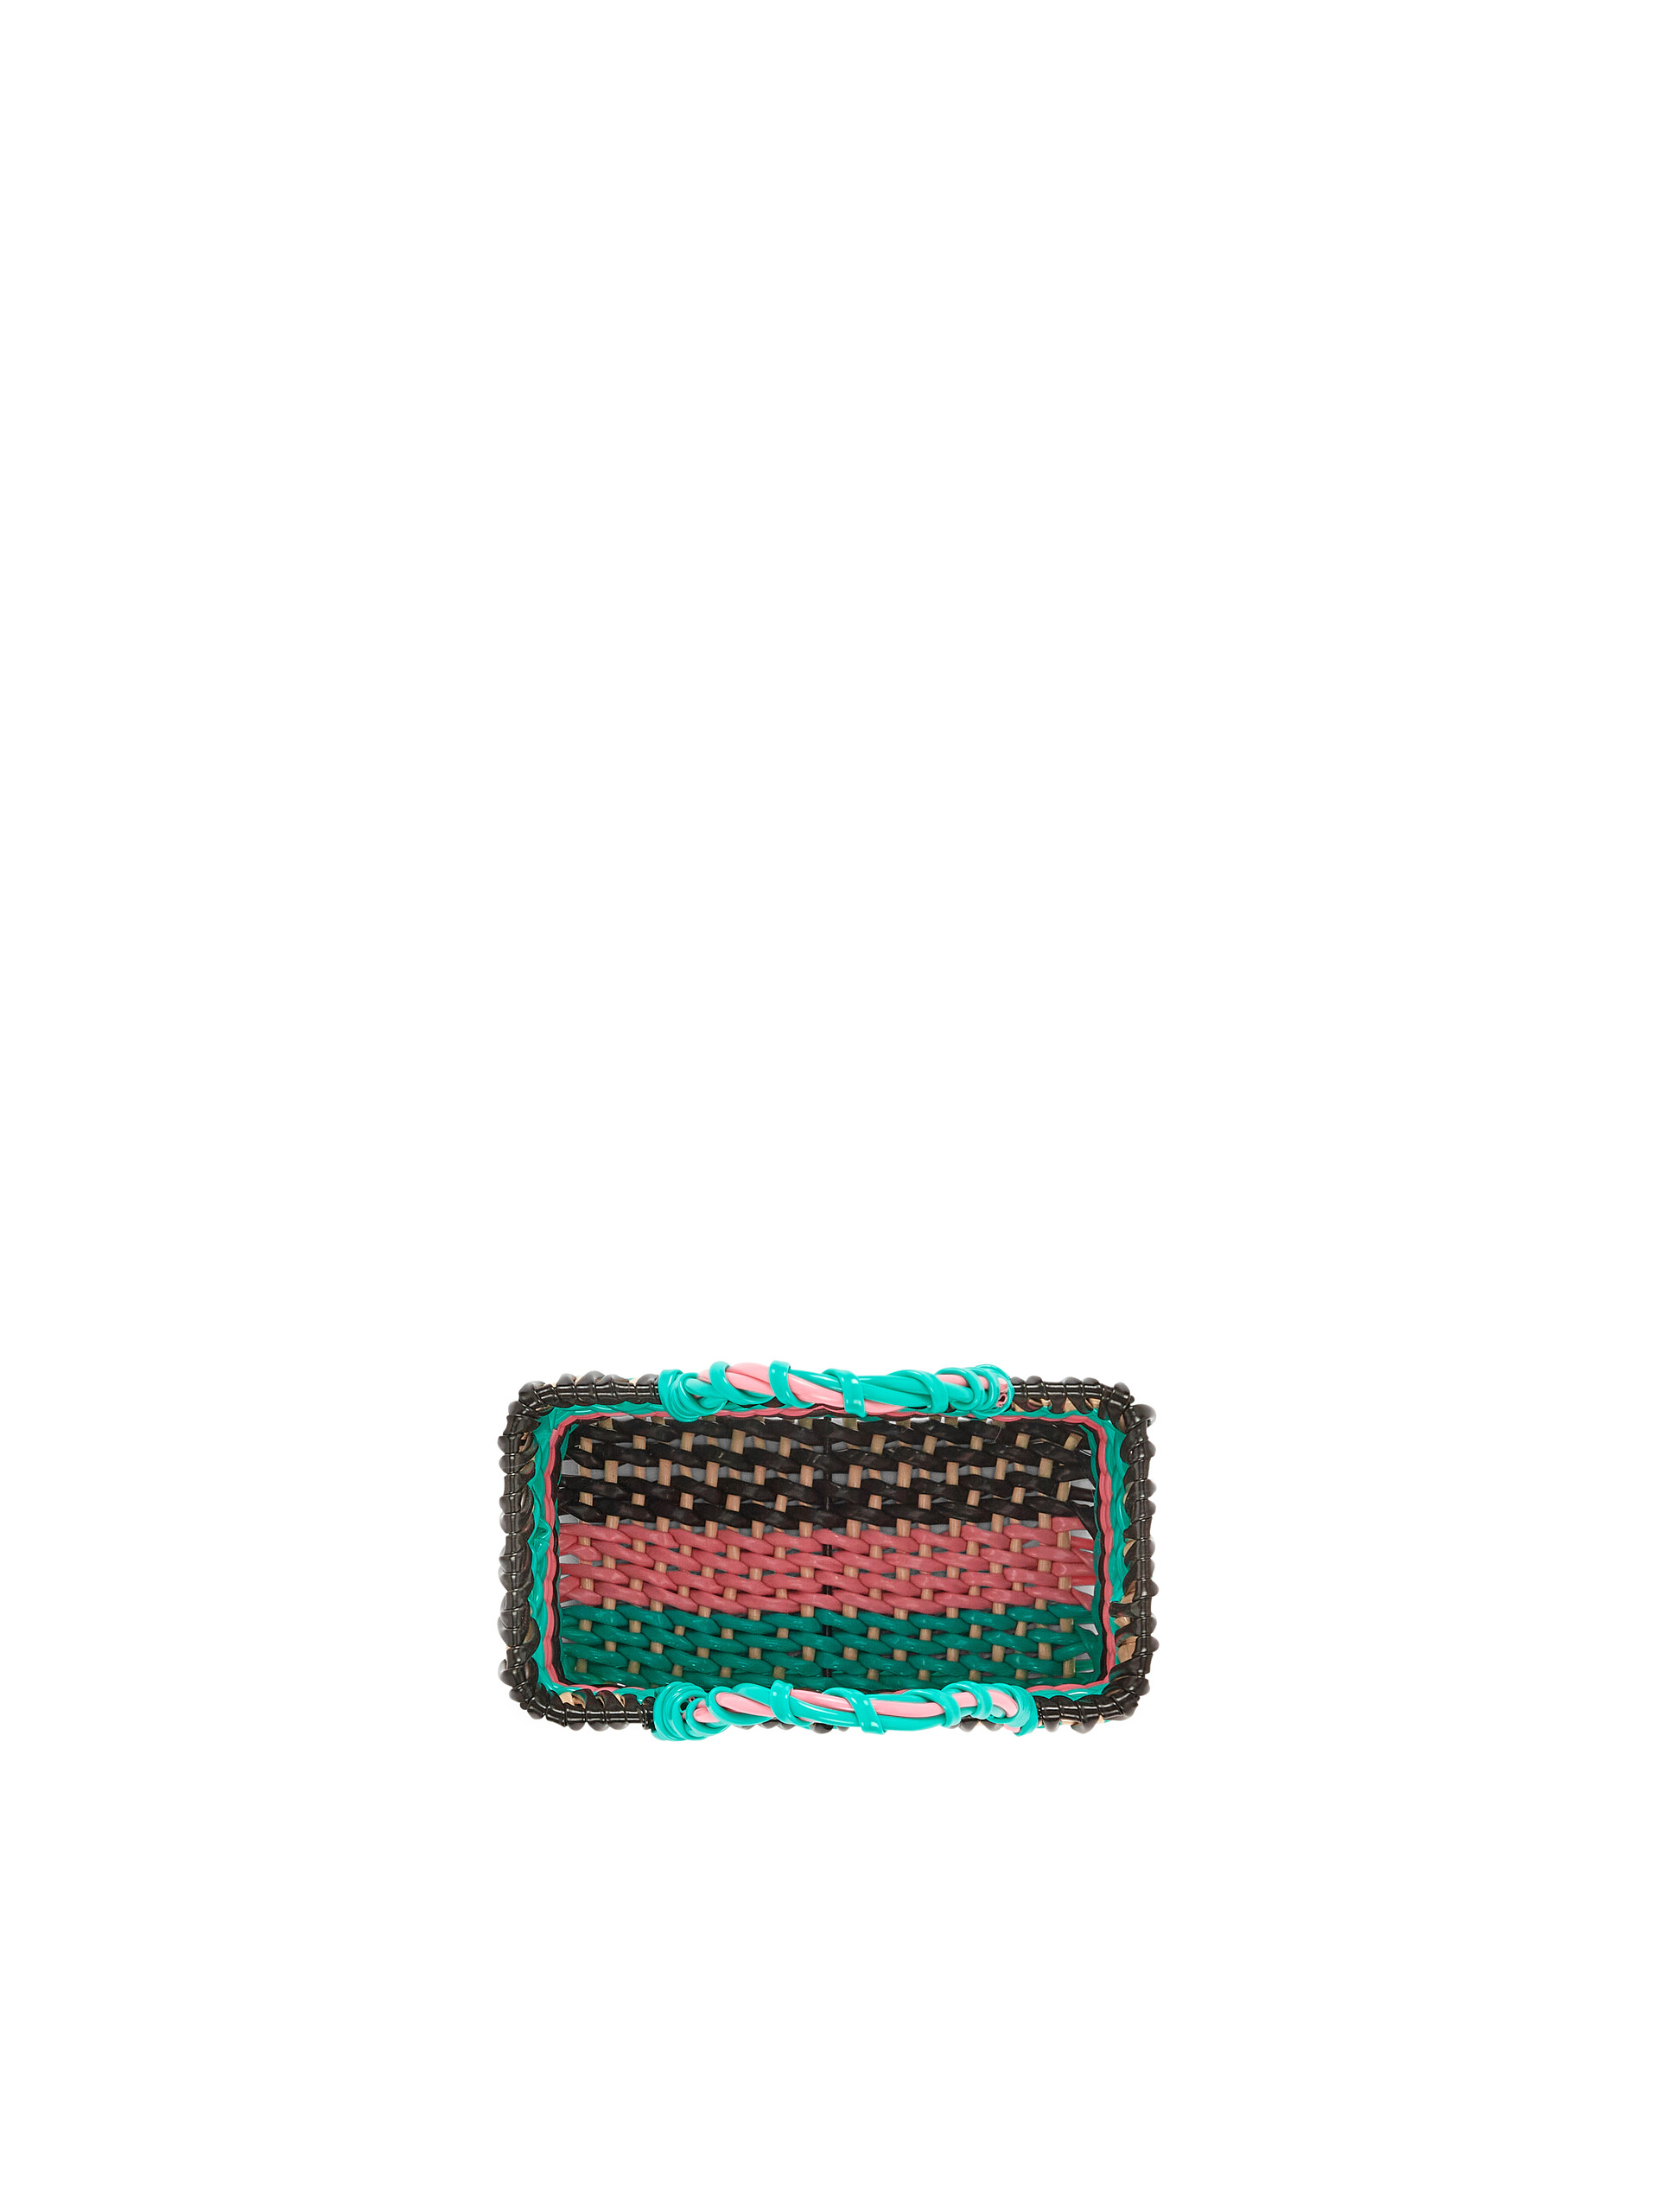 MARNI MARKET multicolour basket - Accessories - Image 4